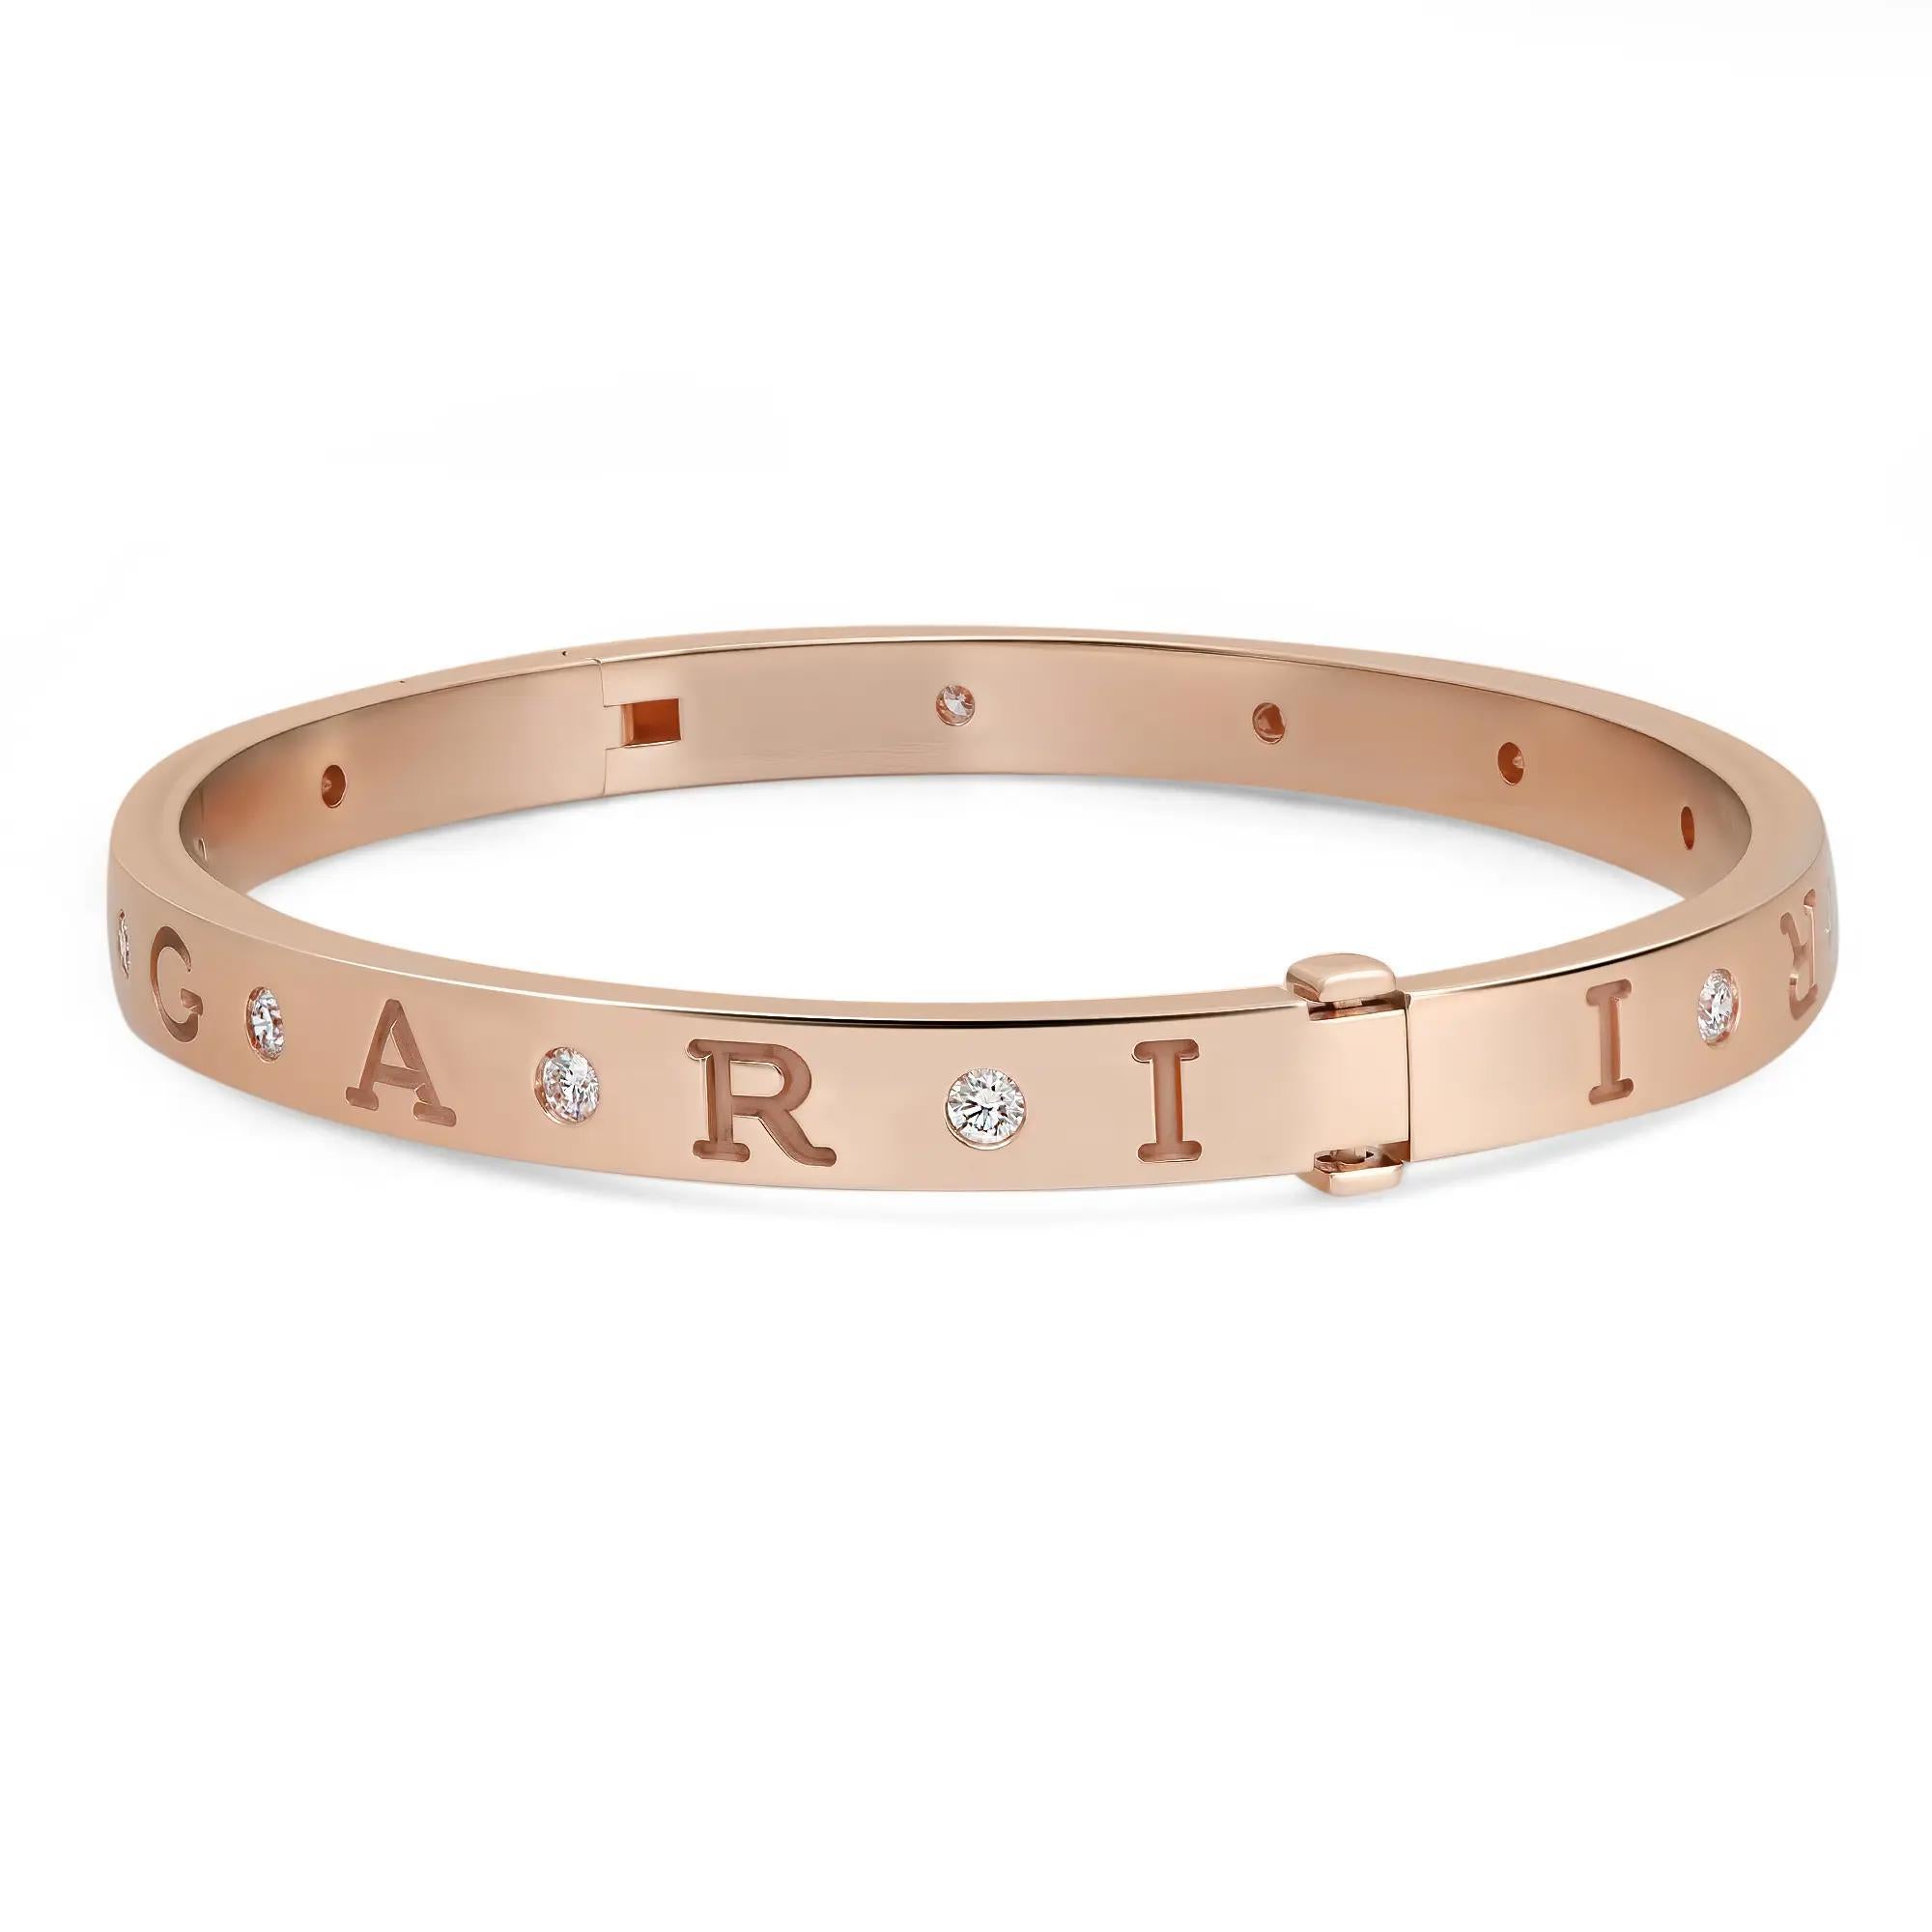 Audacieux et magnifique, ce bracelet est une véritable essence de l'esthétique joaillière. Réalisé en or rose 18 carats brillant. Ce bracelet présente un anneau de forme ovale serti de 12 diamants ronds de taille brillant avec un logo Bvlgari gravé.